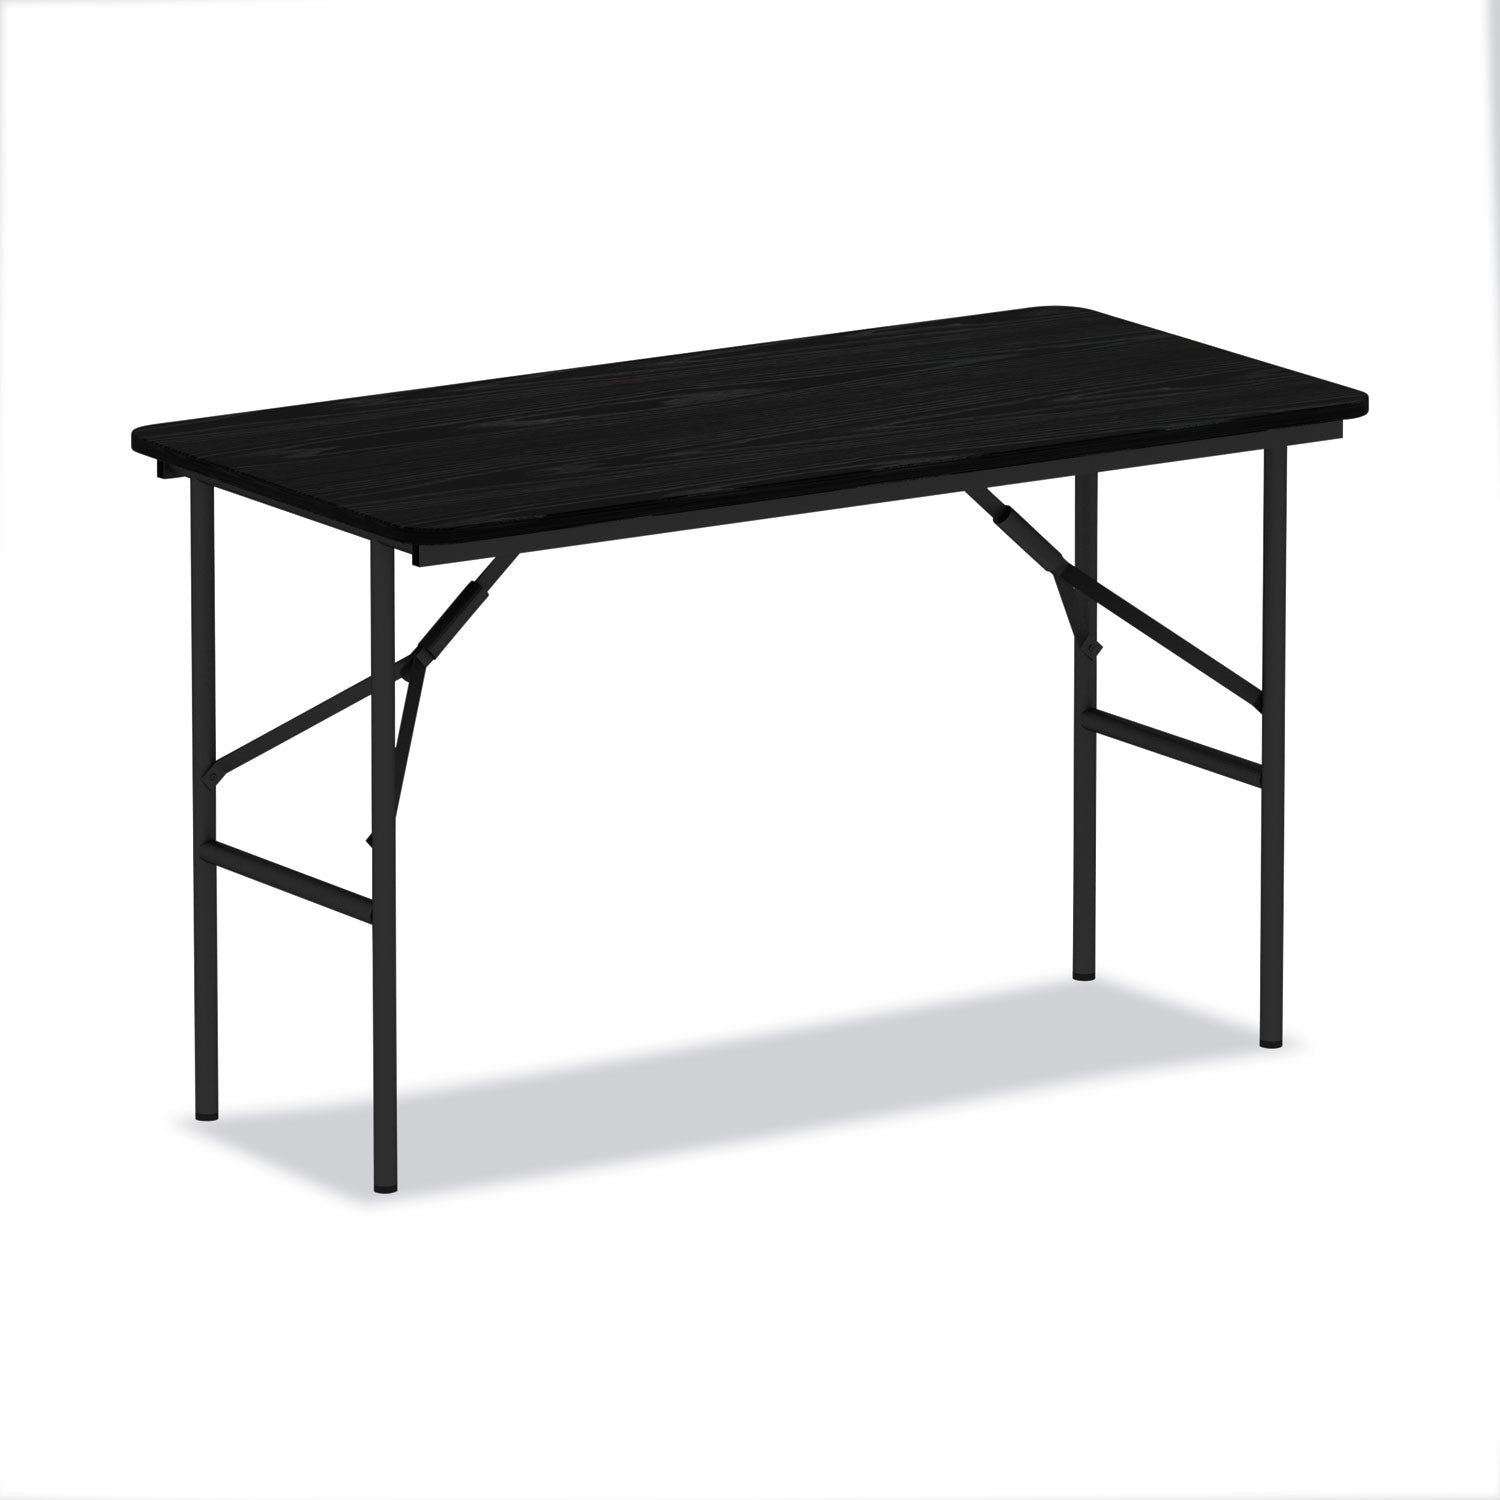 wood-folding-table-rectangular-48w-x-2388d-x-29h-black_aleft724824bk - 1